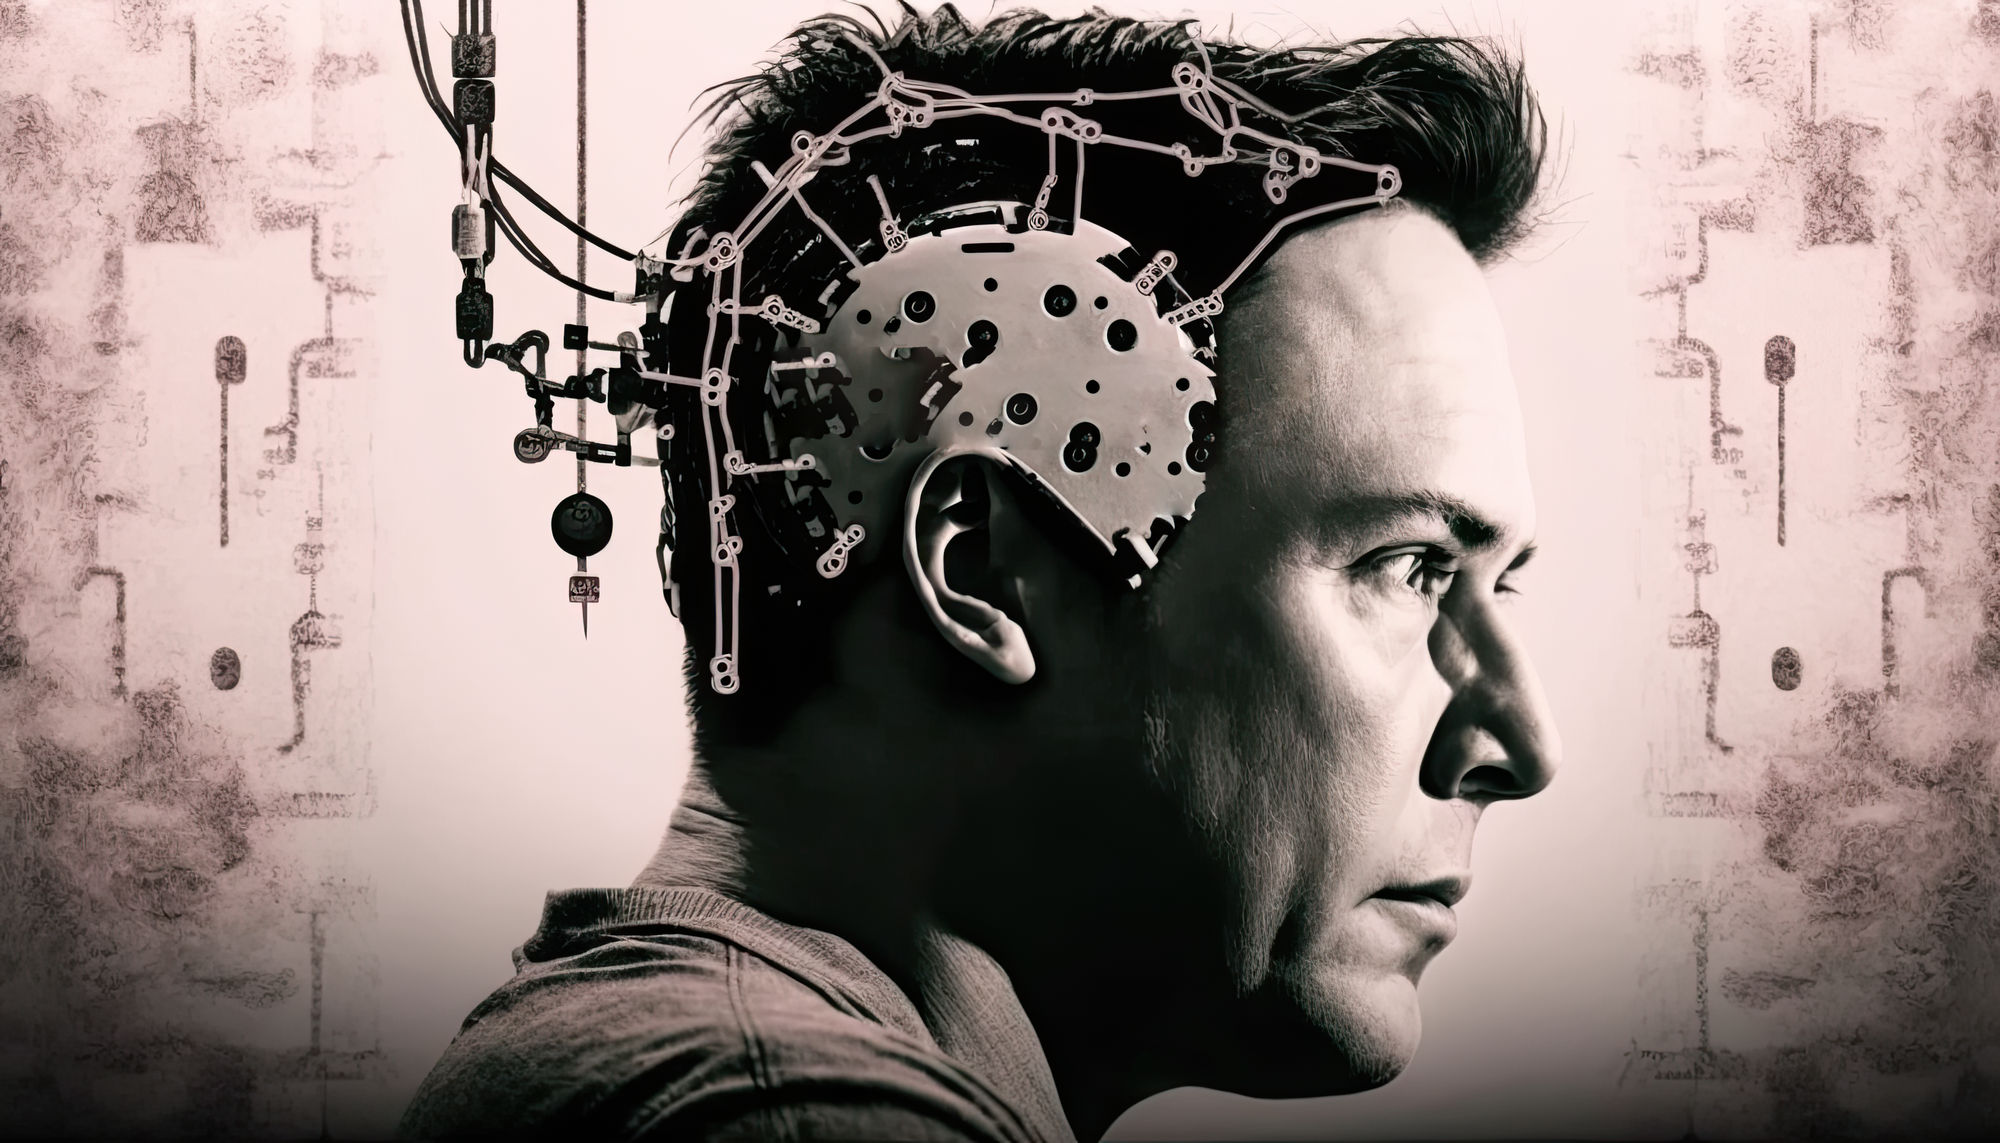     Elon Musk tuyên bố sẽ cấy chip não vào cơ thể - Ảnh 1.